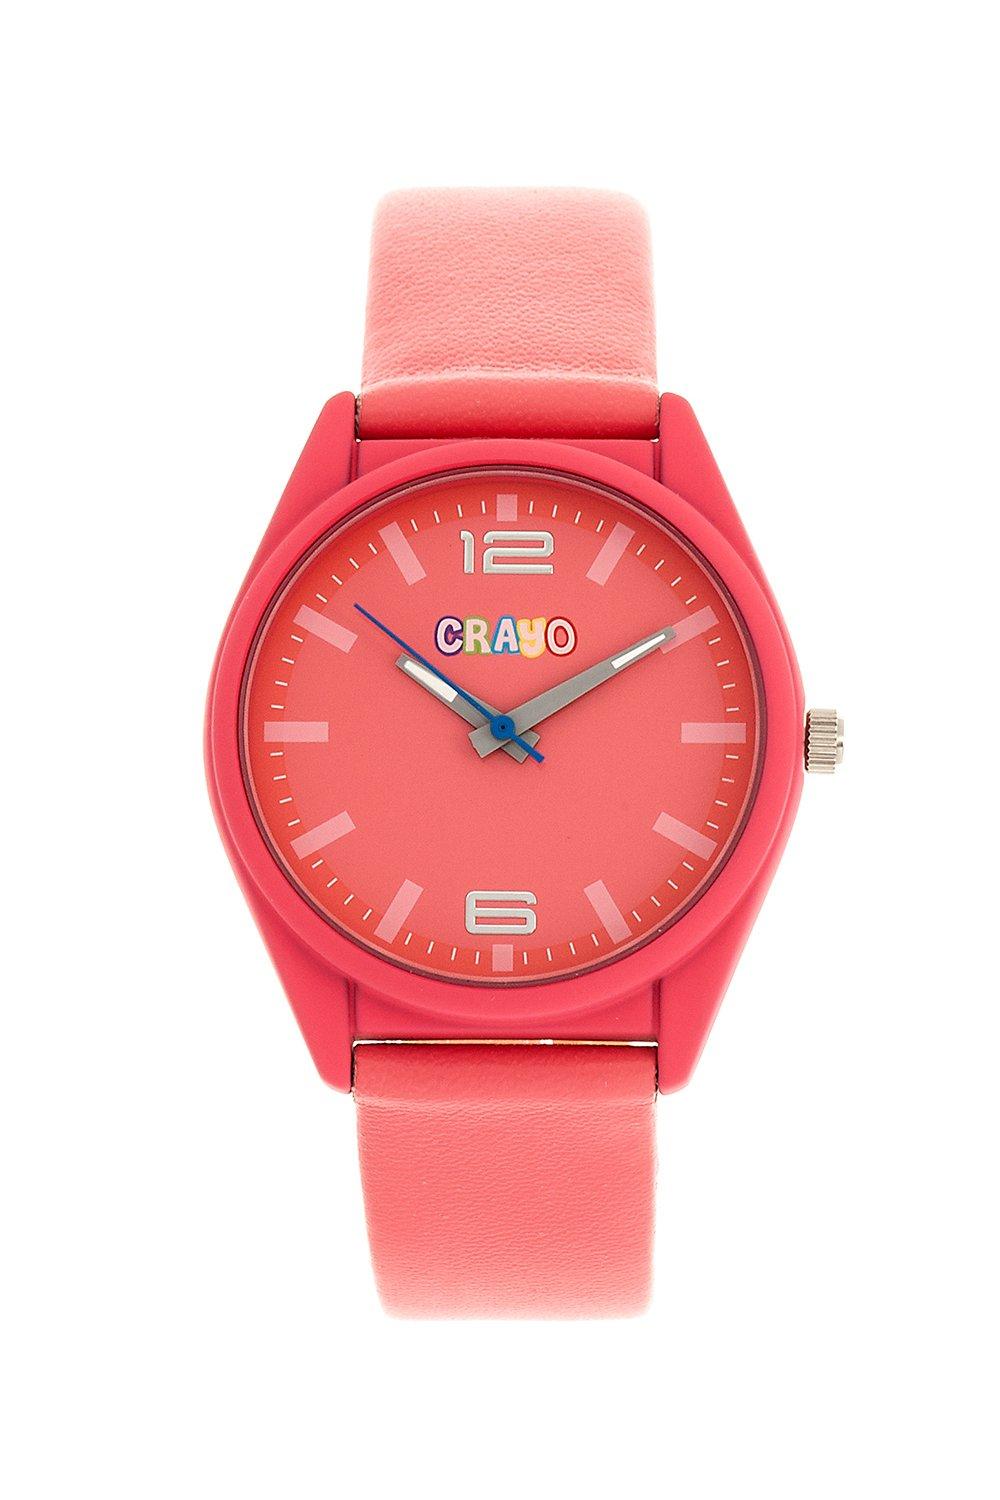 Динамические часы унисекс Crayo, розовый